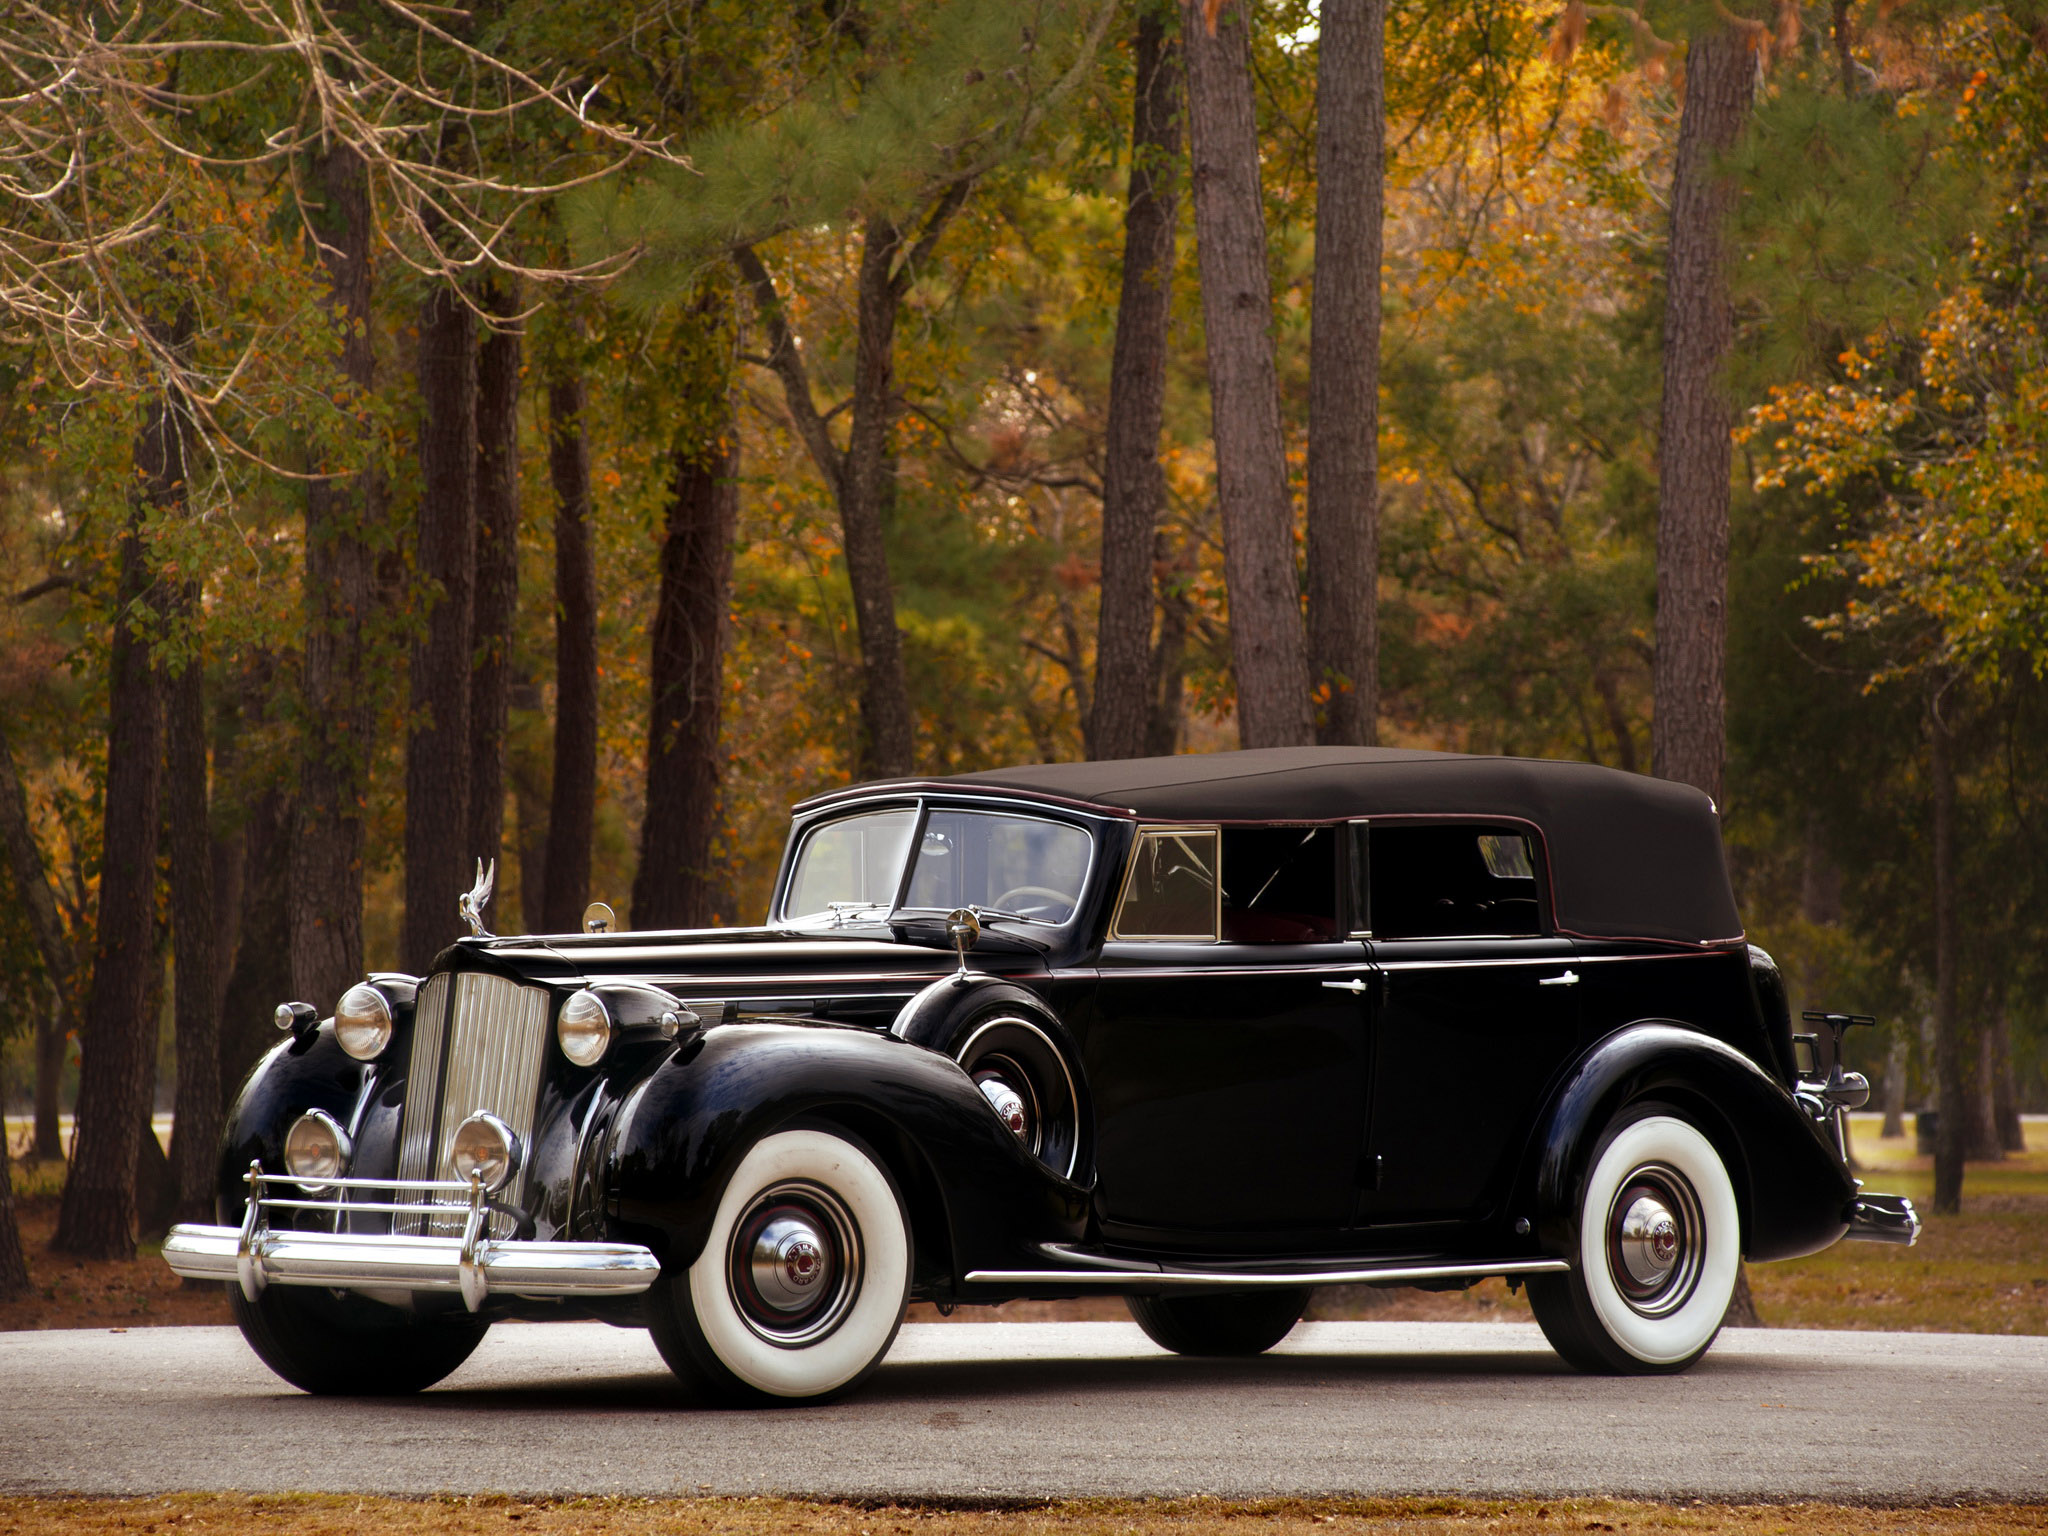 Packard - Một thương hiệu xe hơi đình đám, được yêu thích bởi những người sành điệu và hiểu biết về thương hiệu xe cổ điển. Thưởng thức những bức ảnh về những chiếc xe Packard tuyệt đẹp và đầy lịch sử, mang đến cho bạn một món quà giá trị. 